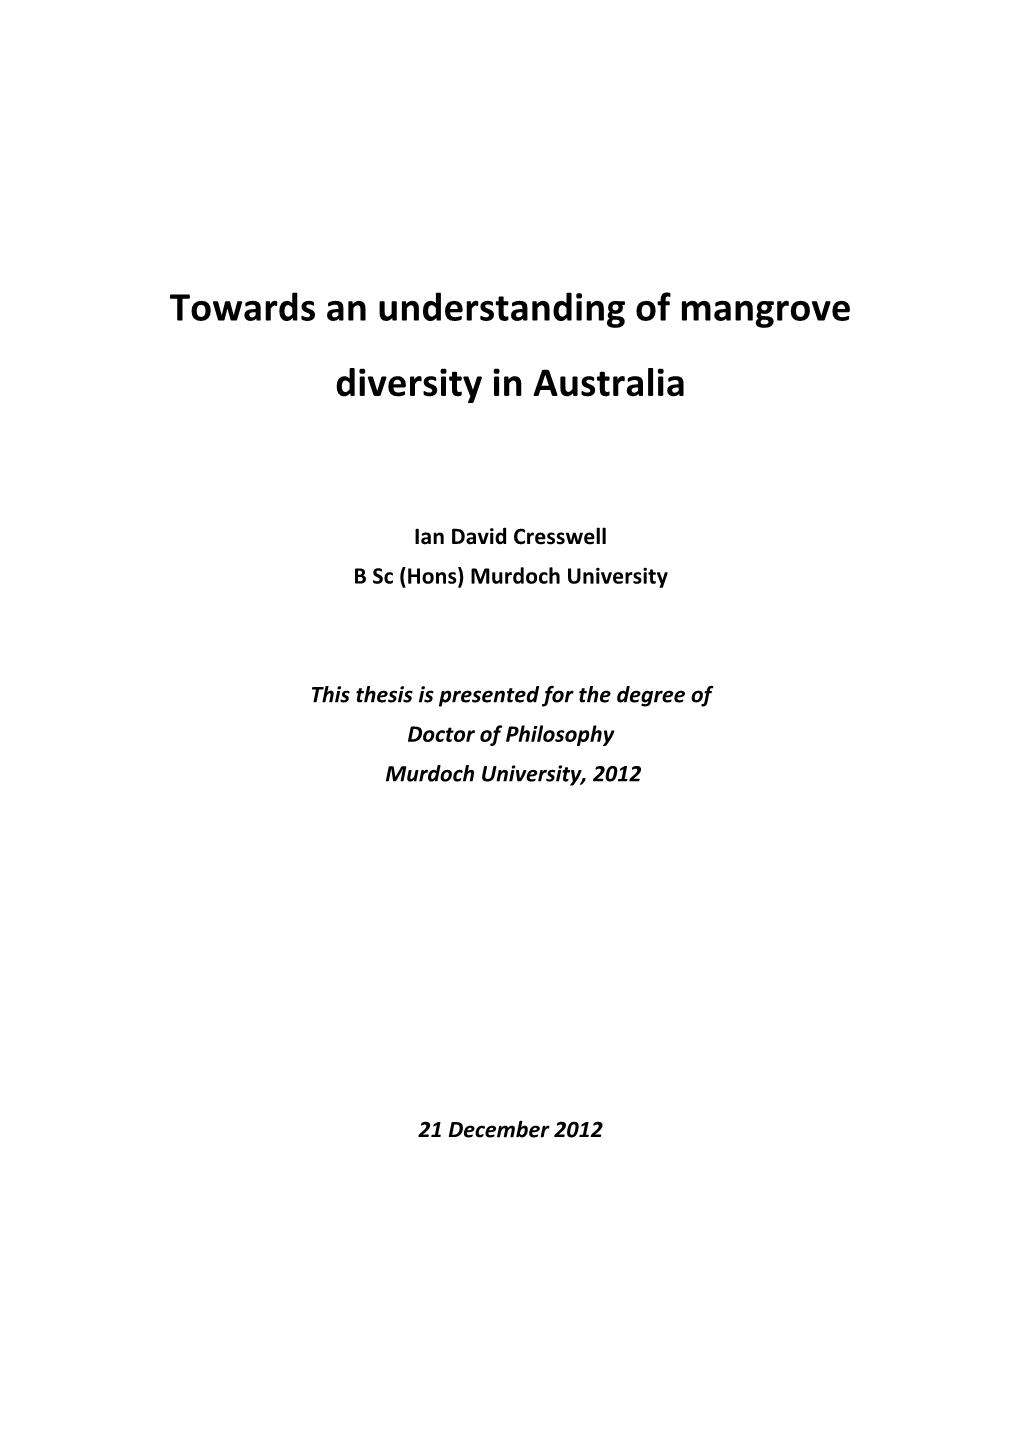 Towards an Understanding of Mangrove Diversity in Australia